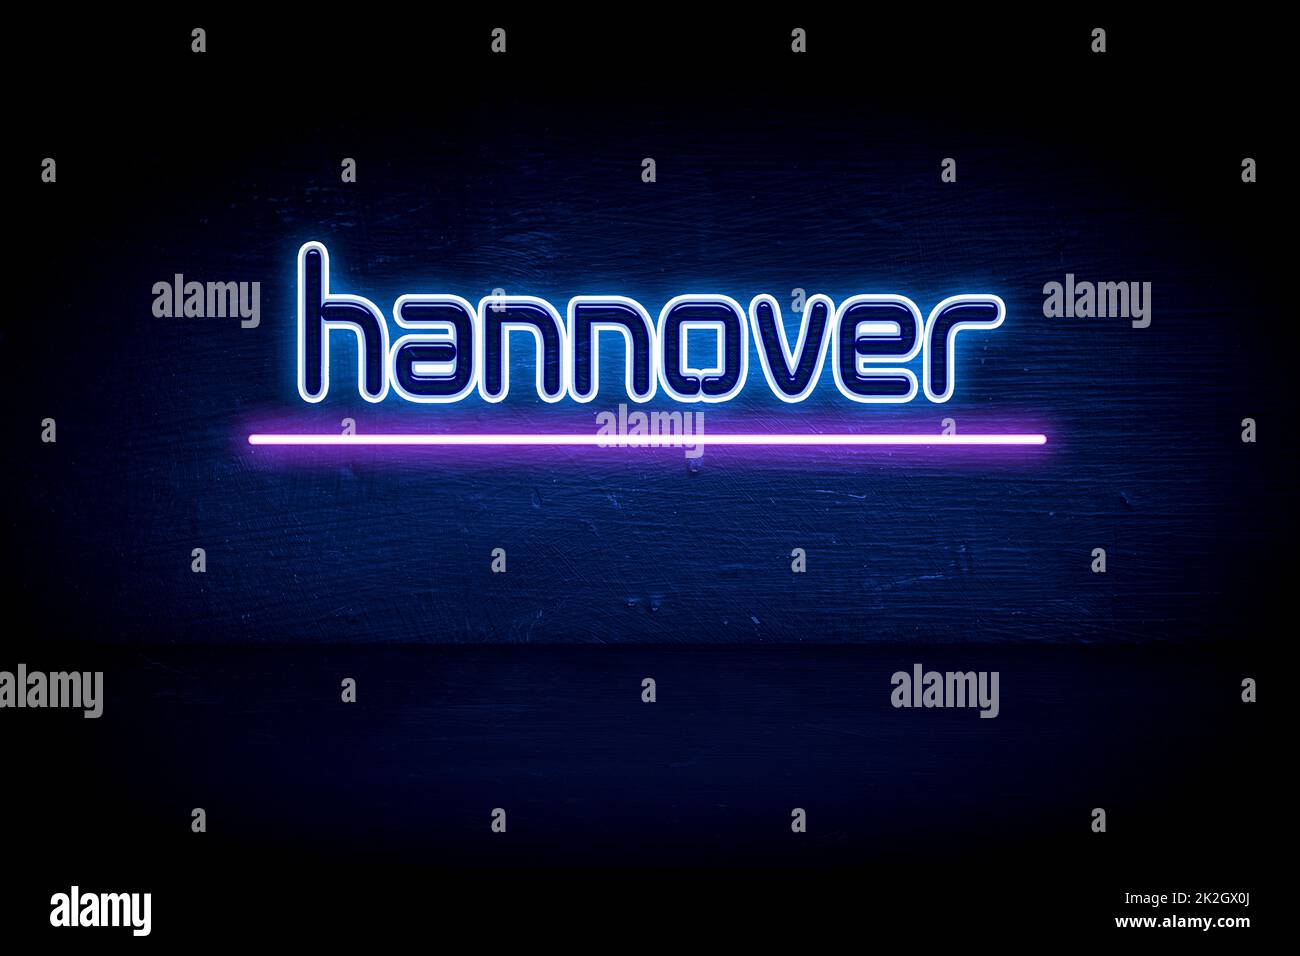 Hanovre - panneau d'annonce au néon bleu Banque D'Images